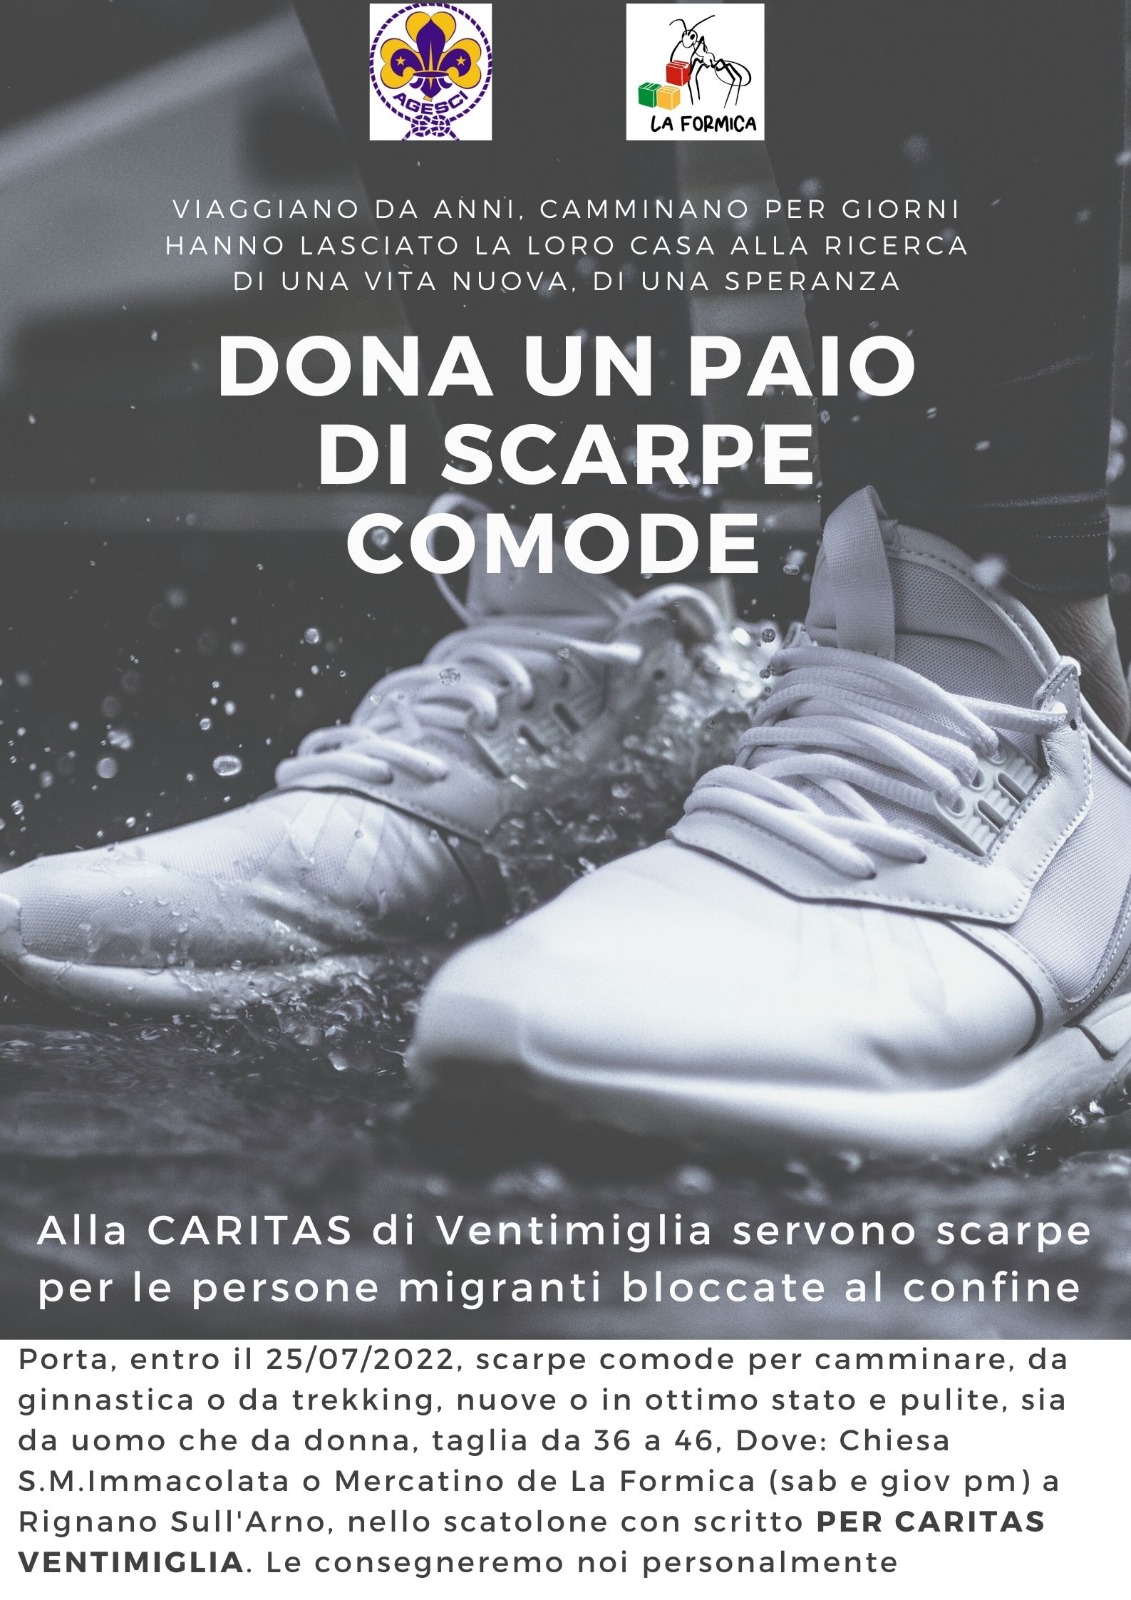 Invito a donare un paio di scarpe comode per i migranti. Caritas di Ventimiglia